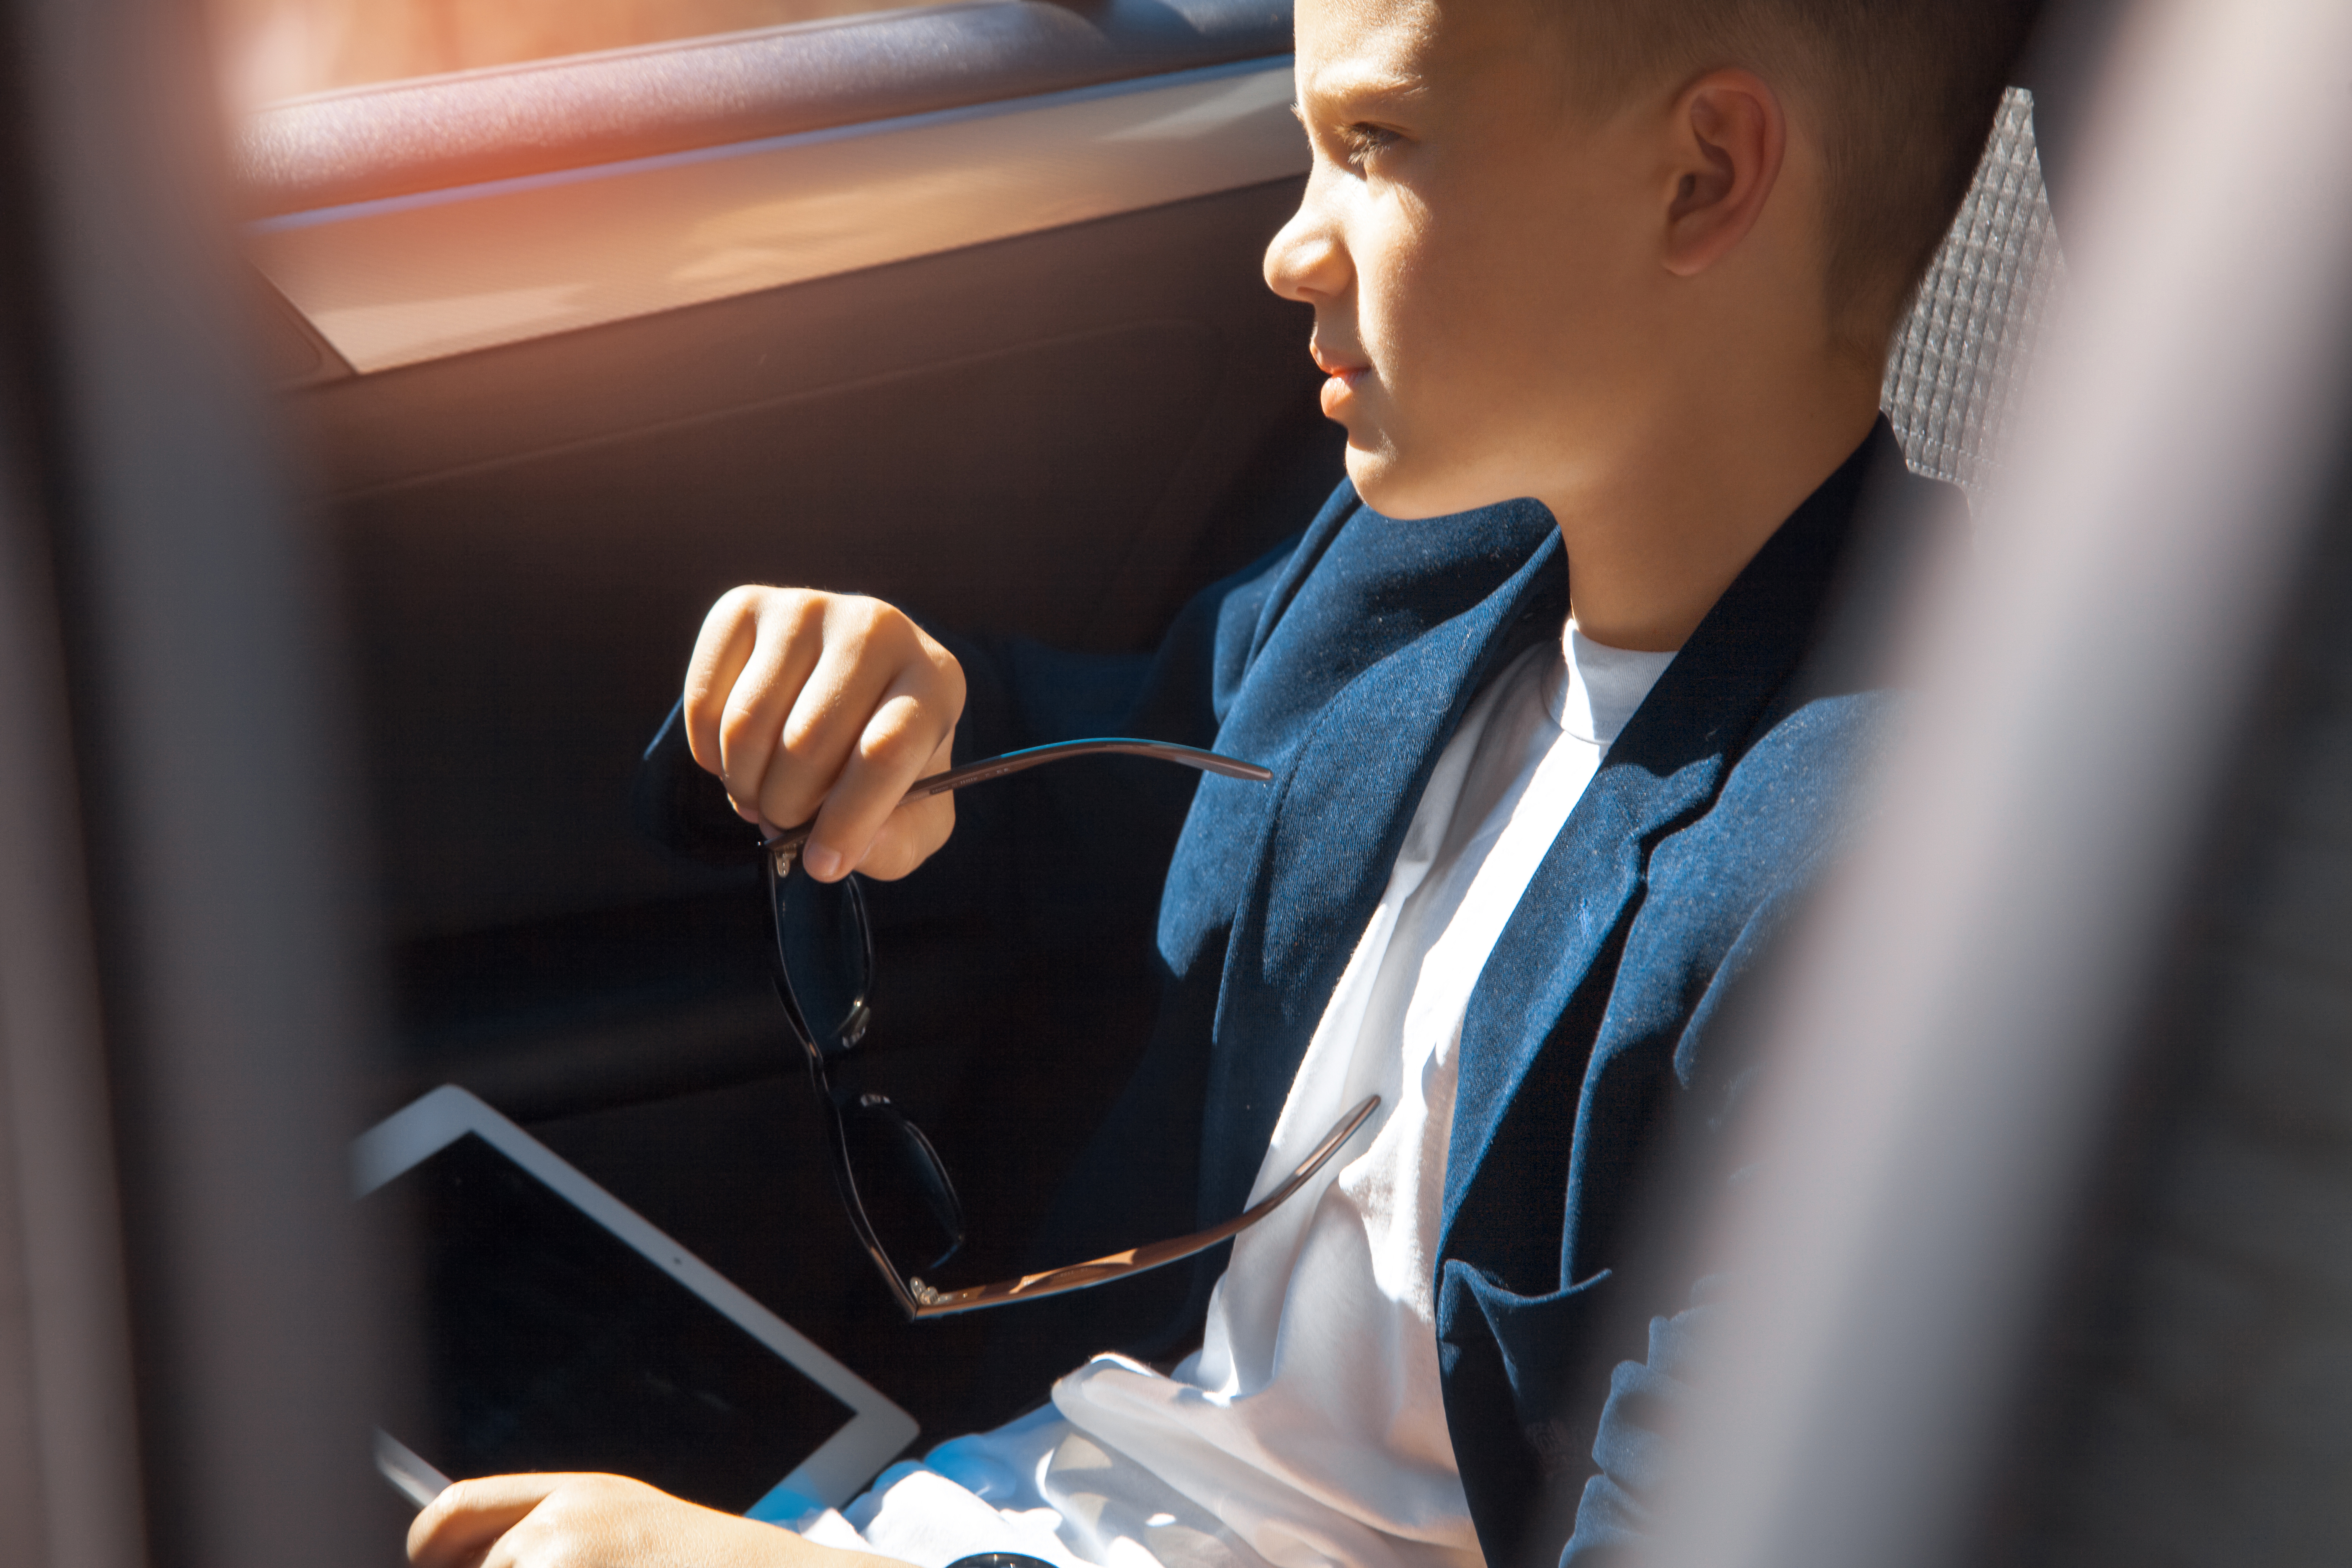 Joven rico sentado en el asiento trasero de un Automóvil. | Fuente: Shutterstock